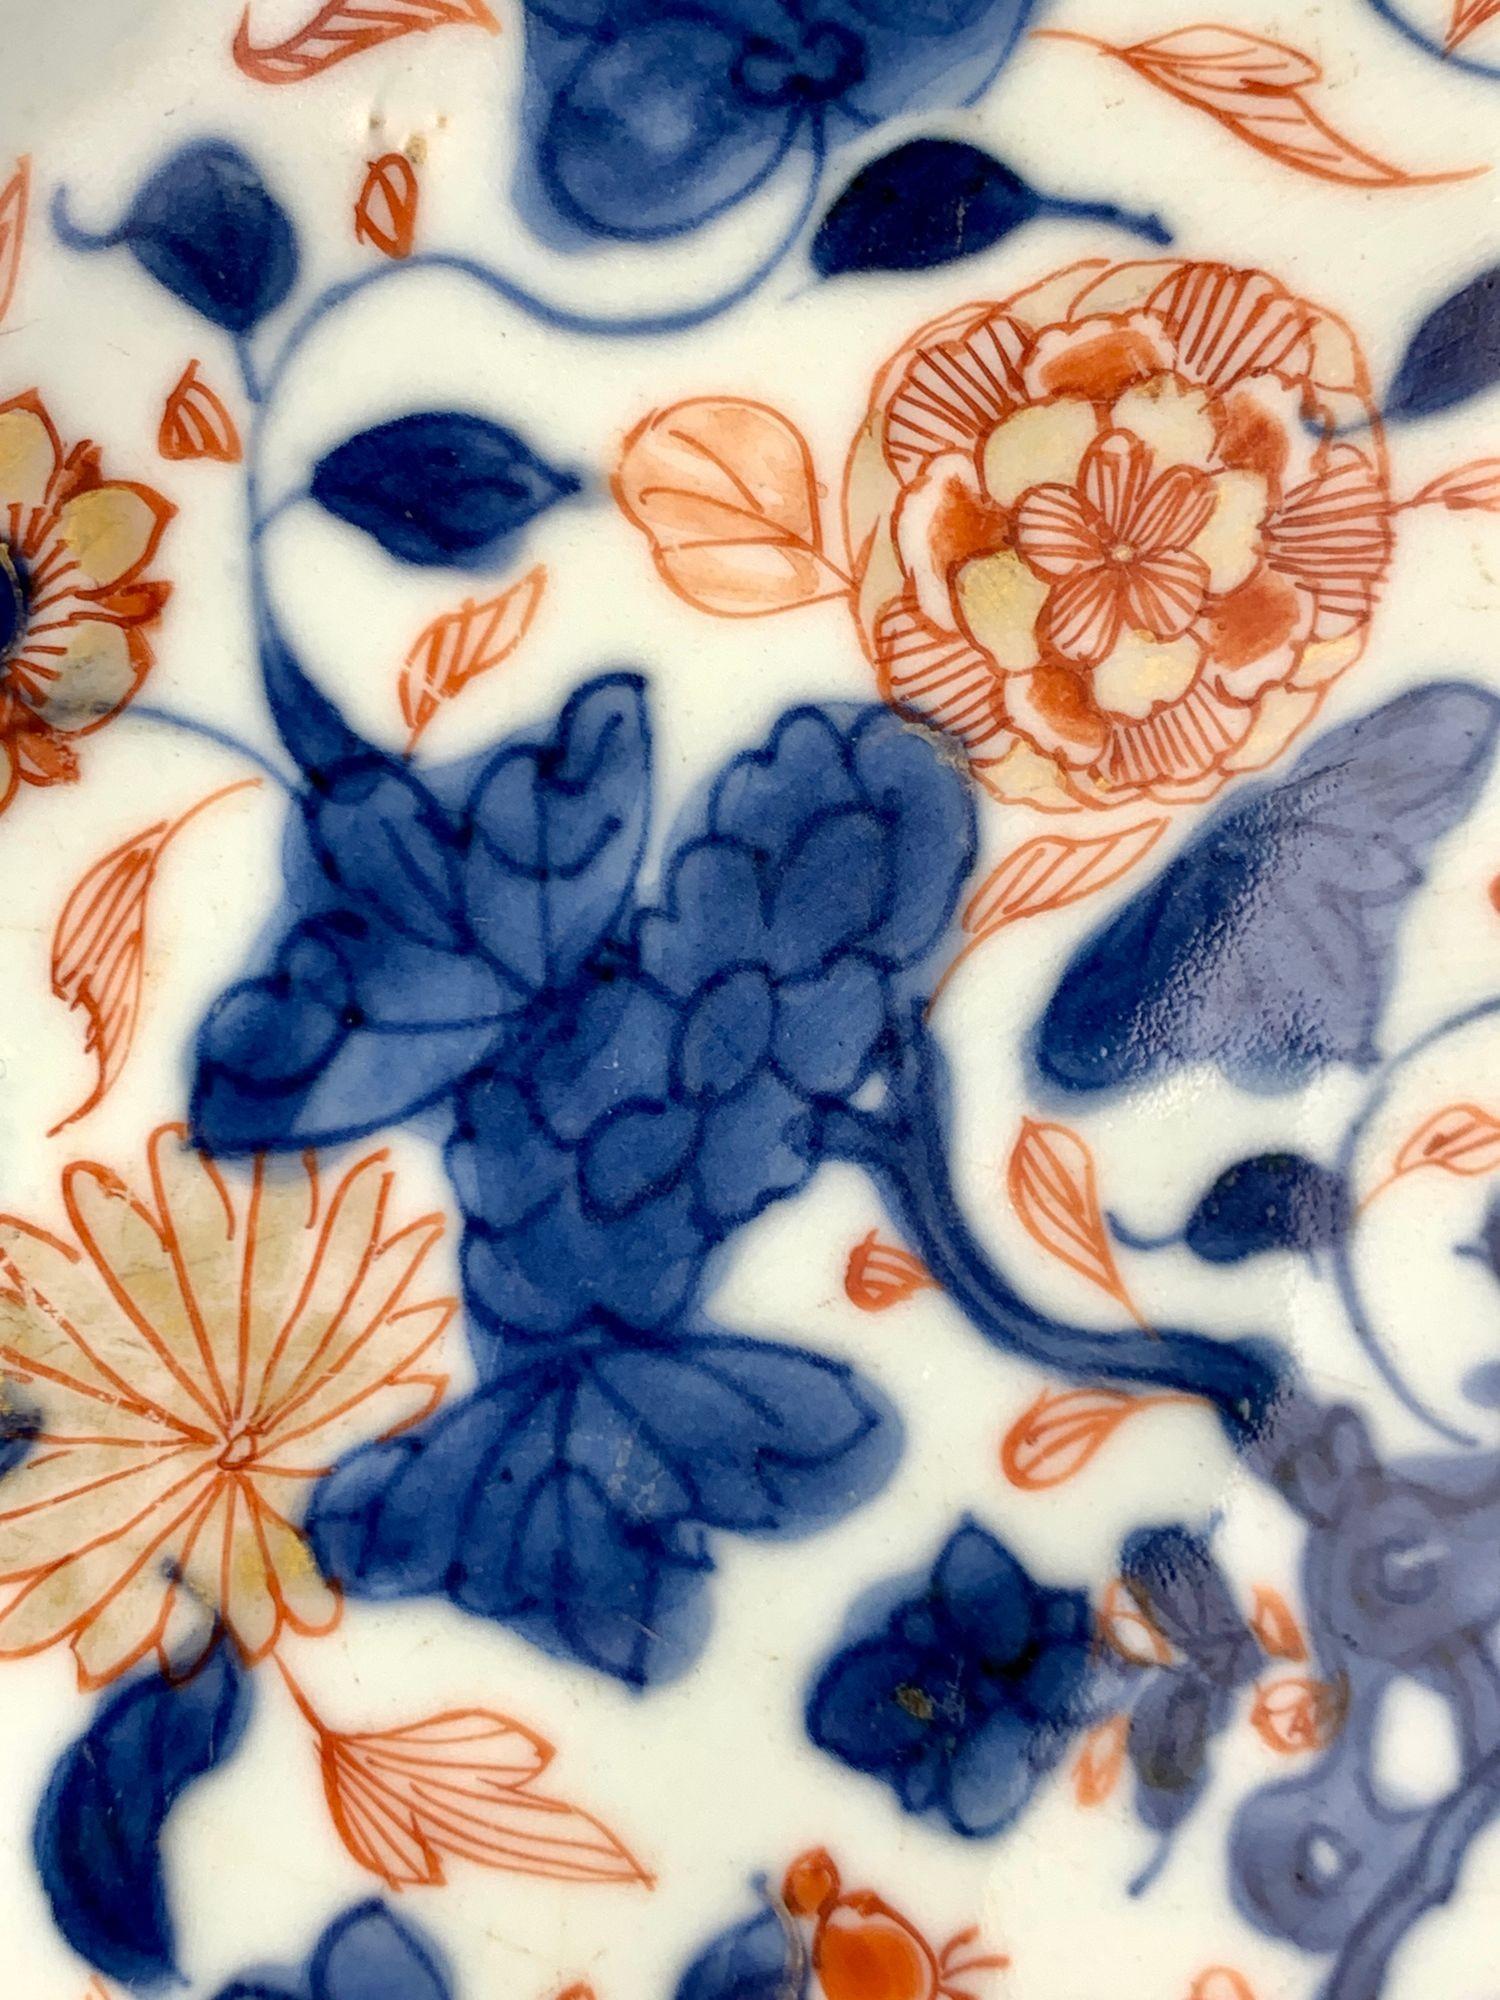 Ce grand chargeur chinois en porcelaine Imari date de la période Qianlong de la dynastie Qing, vers 1760.   Finement empoté et recouvert d'une riche glaçure blanche vitreuse, le chargeur est peint à la main dans une palette Imari éclatante de rouge